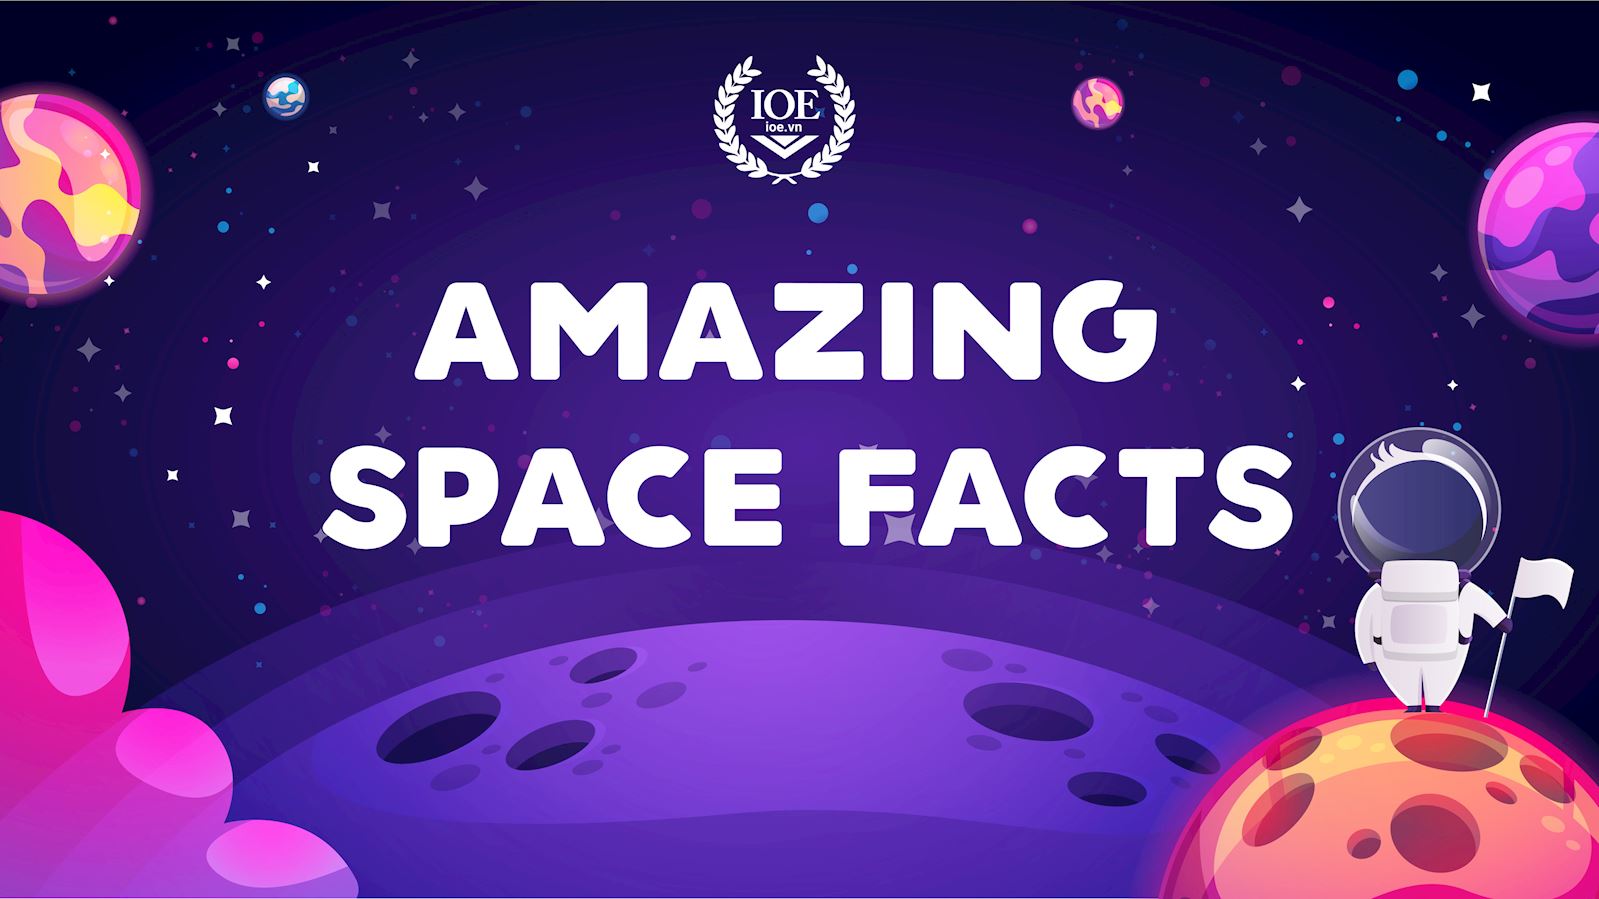 Amazing space facts - Những sự thật thú vị về vũ trụ